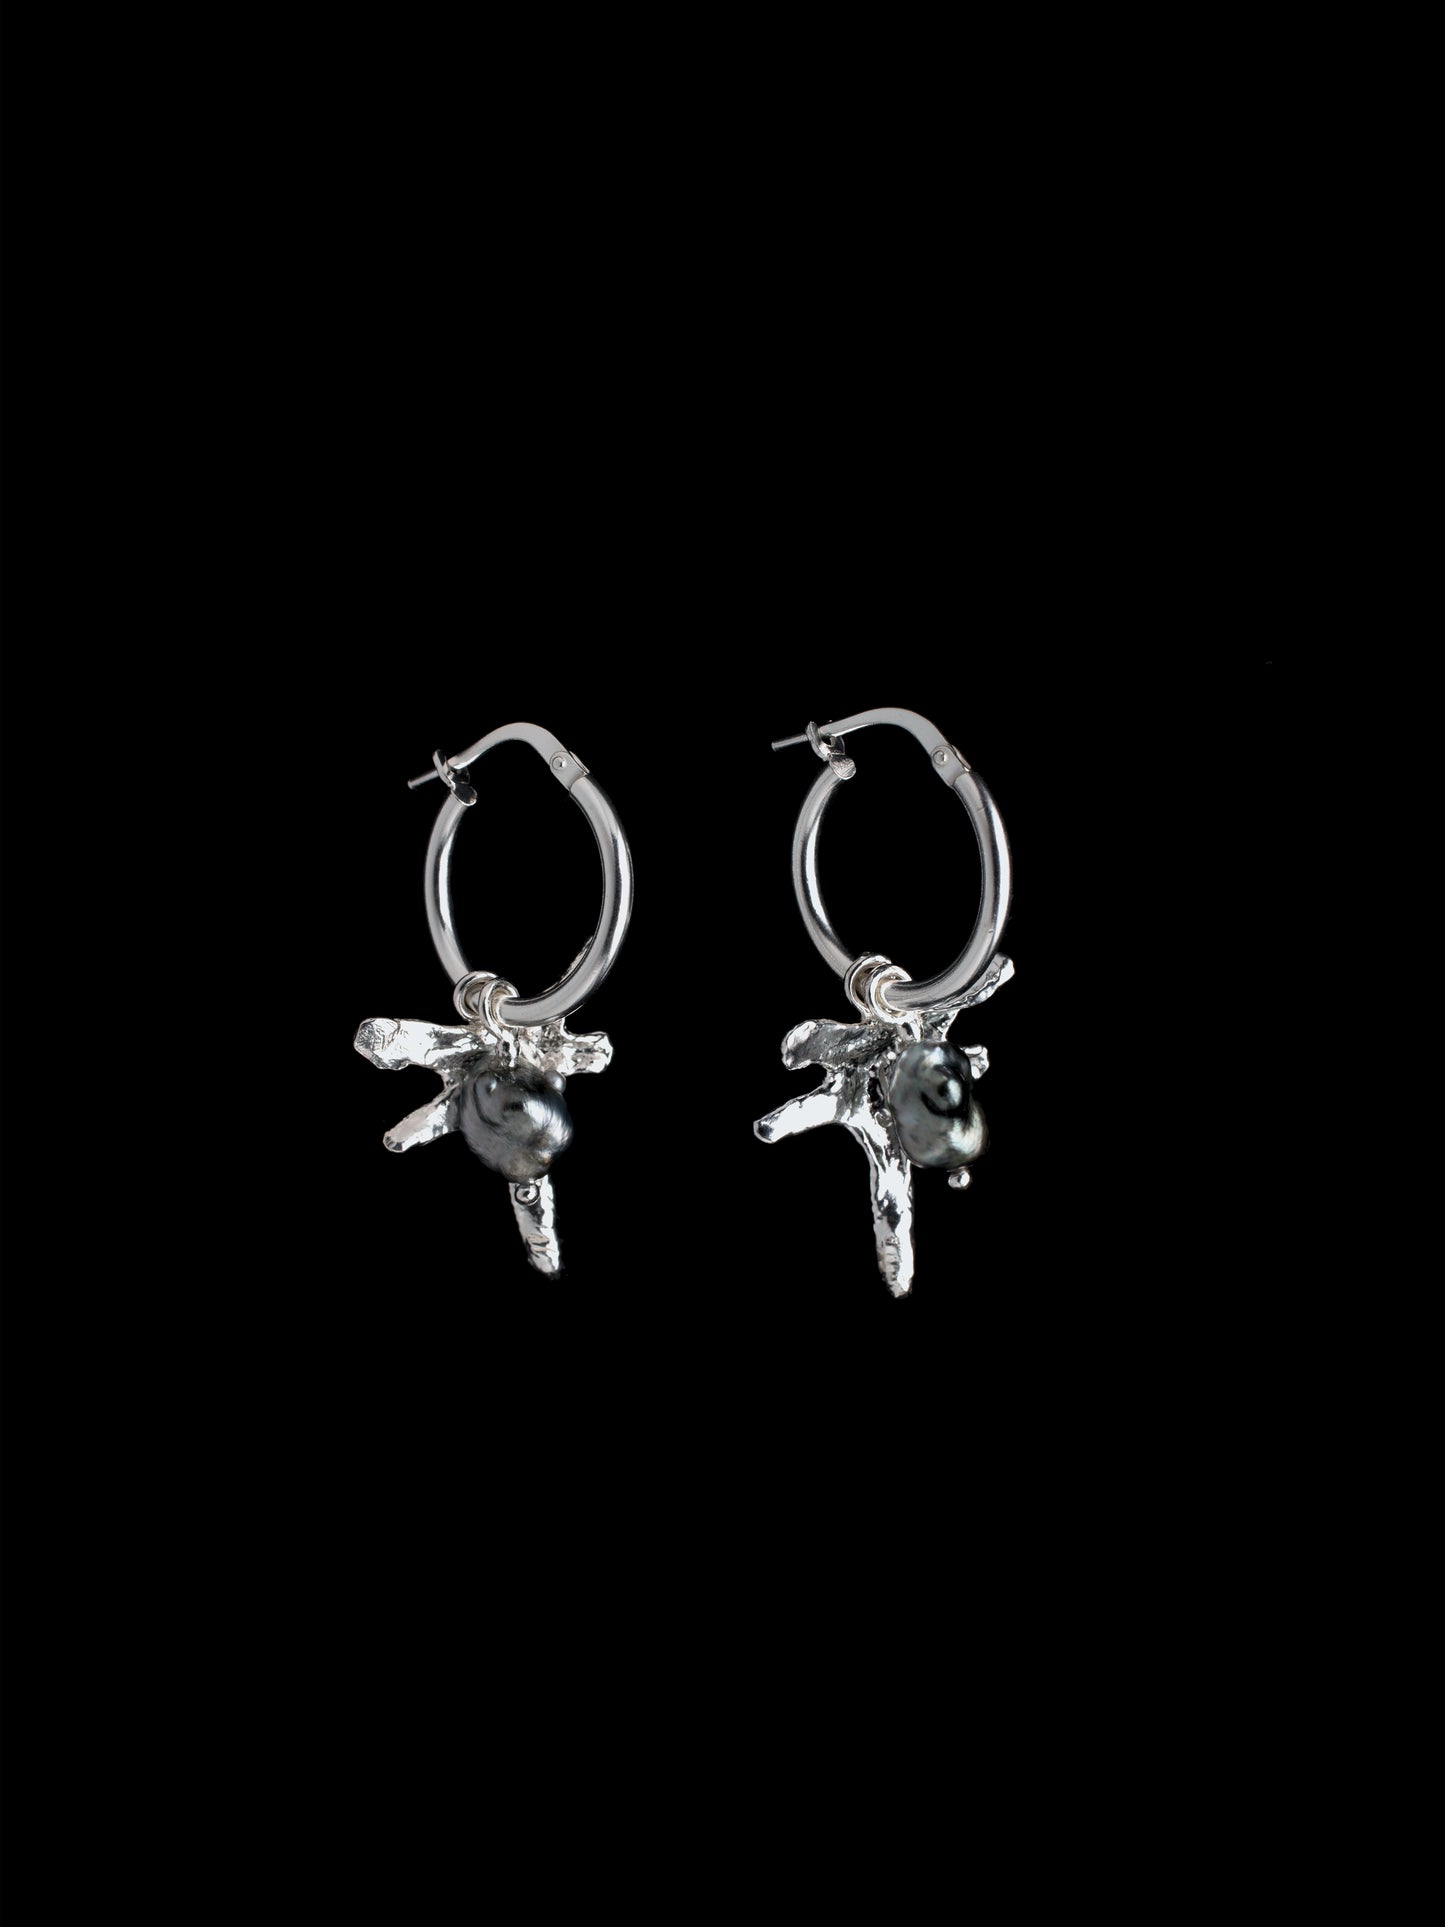 Keshi pearl and silver star pendant hoop earrings